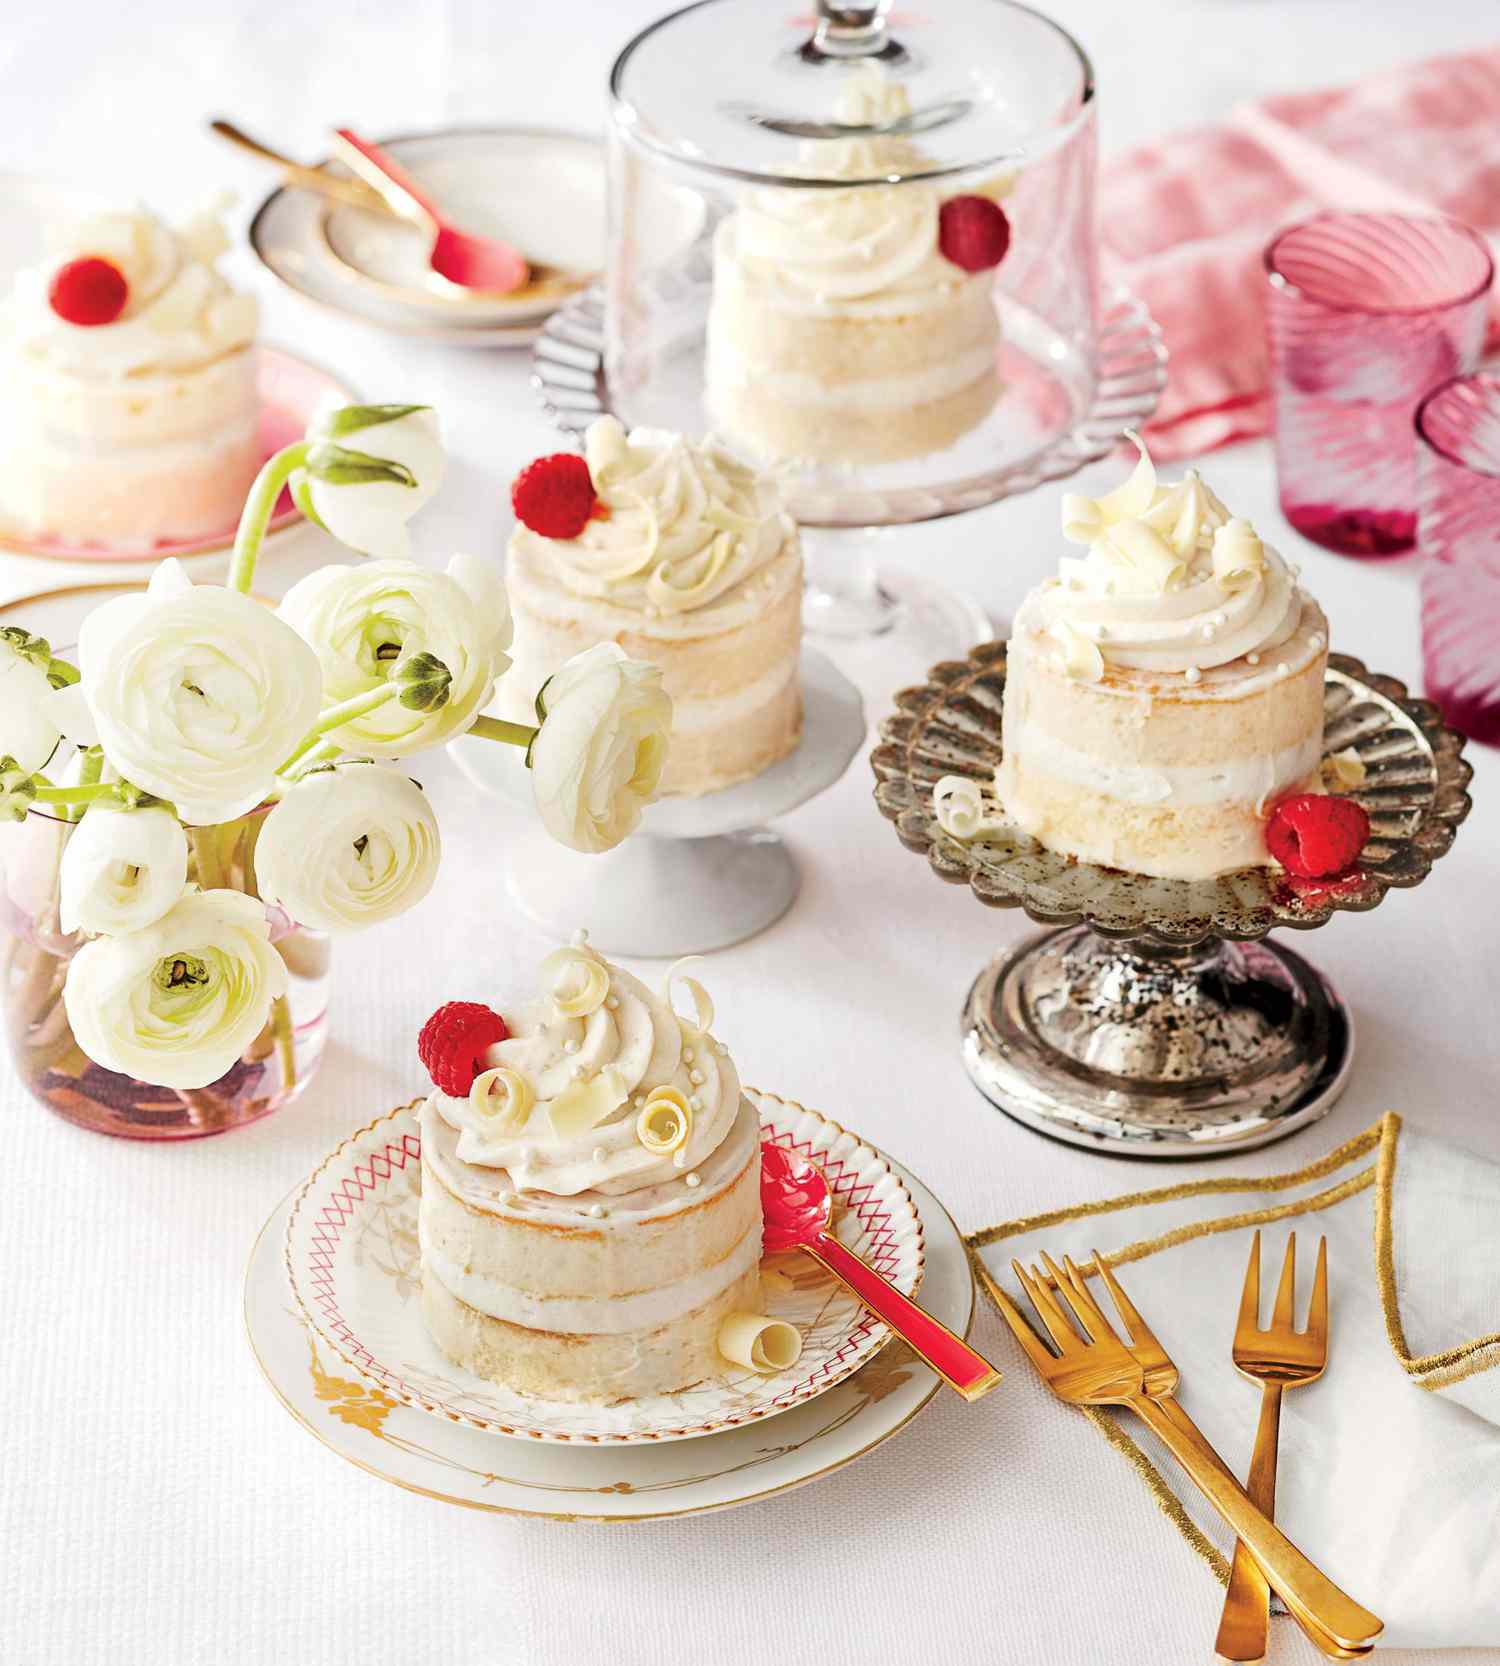 Egy gyönyörűen megterített asztalon egyedi kis sütemények láthatók tejszínhabbal és málnával. Egyes sütemények díszes állványokon, míg mások üveglapokban vannak. Az asztalon fehér ranunculus virágok is találhatók vázában, színes poharak és arany edények.